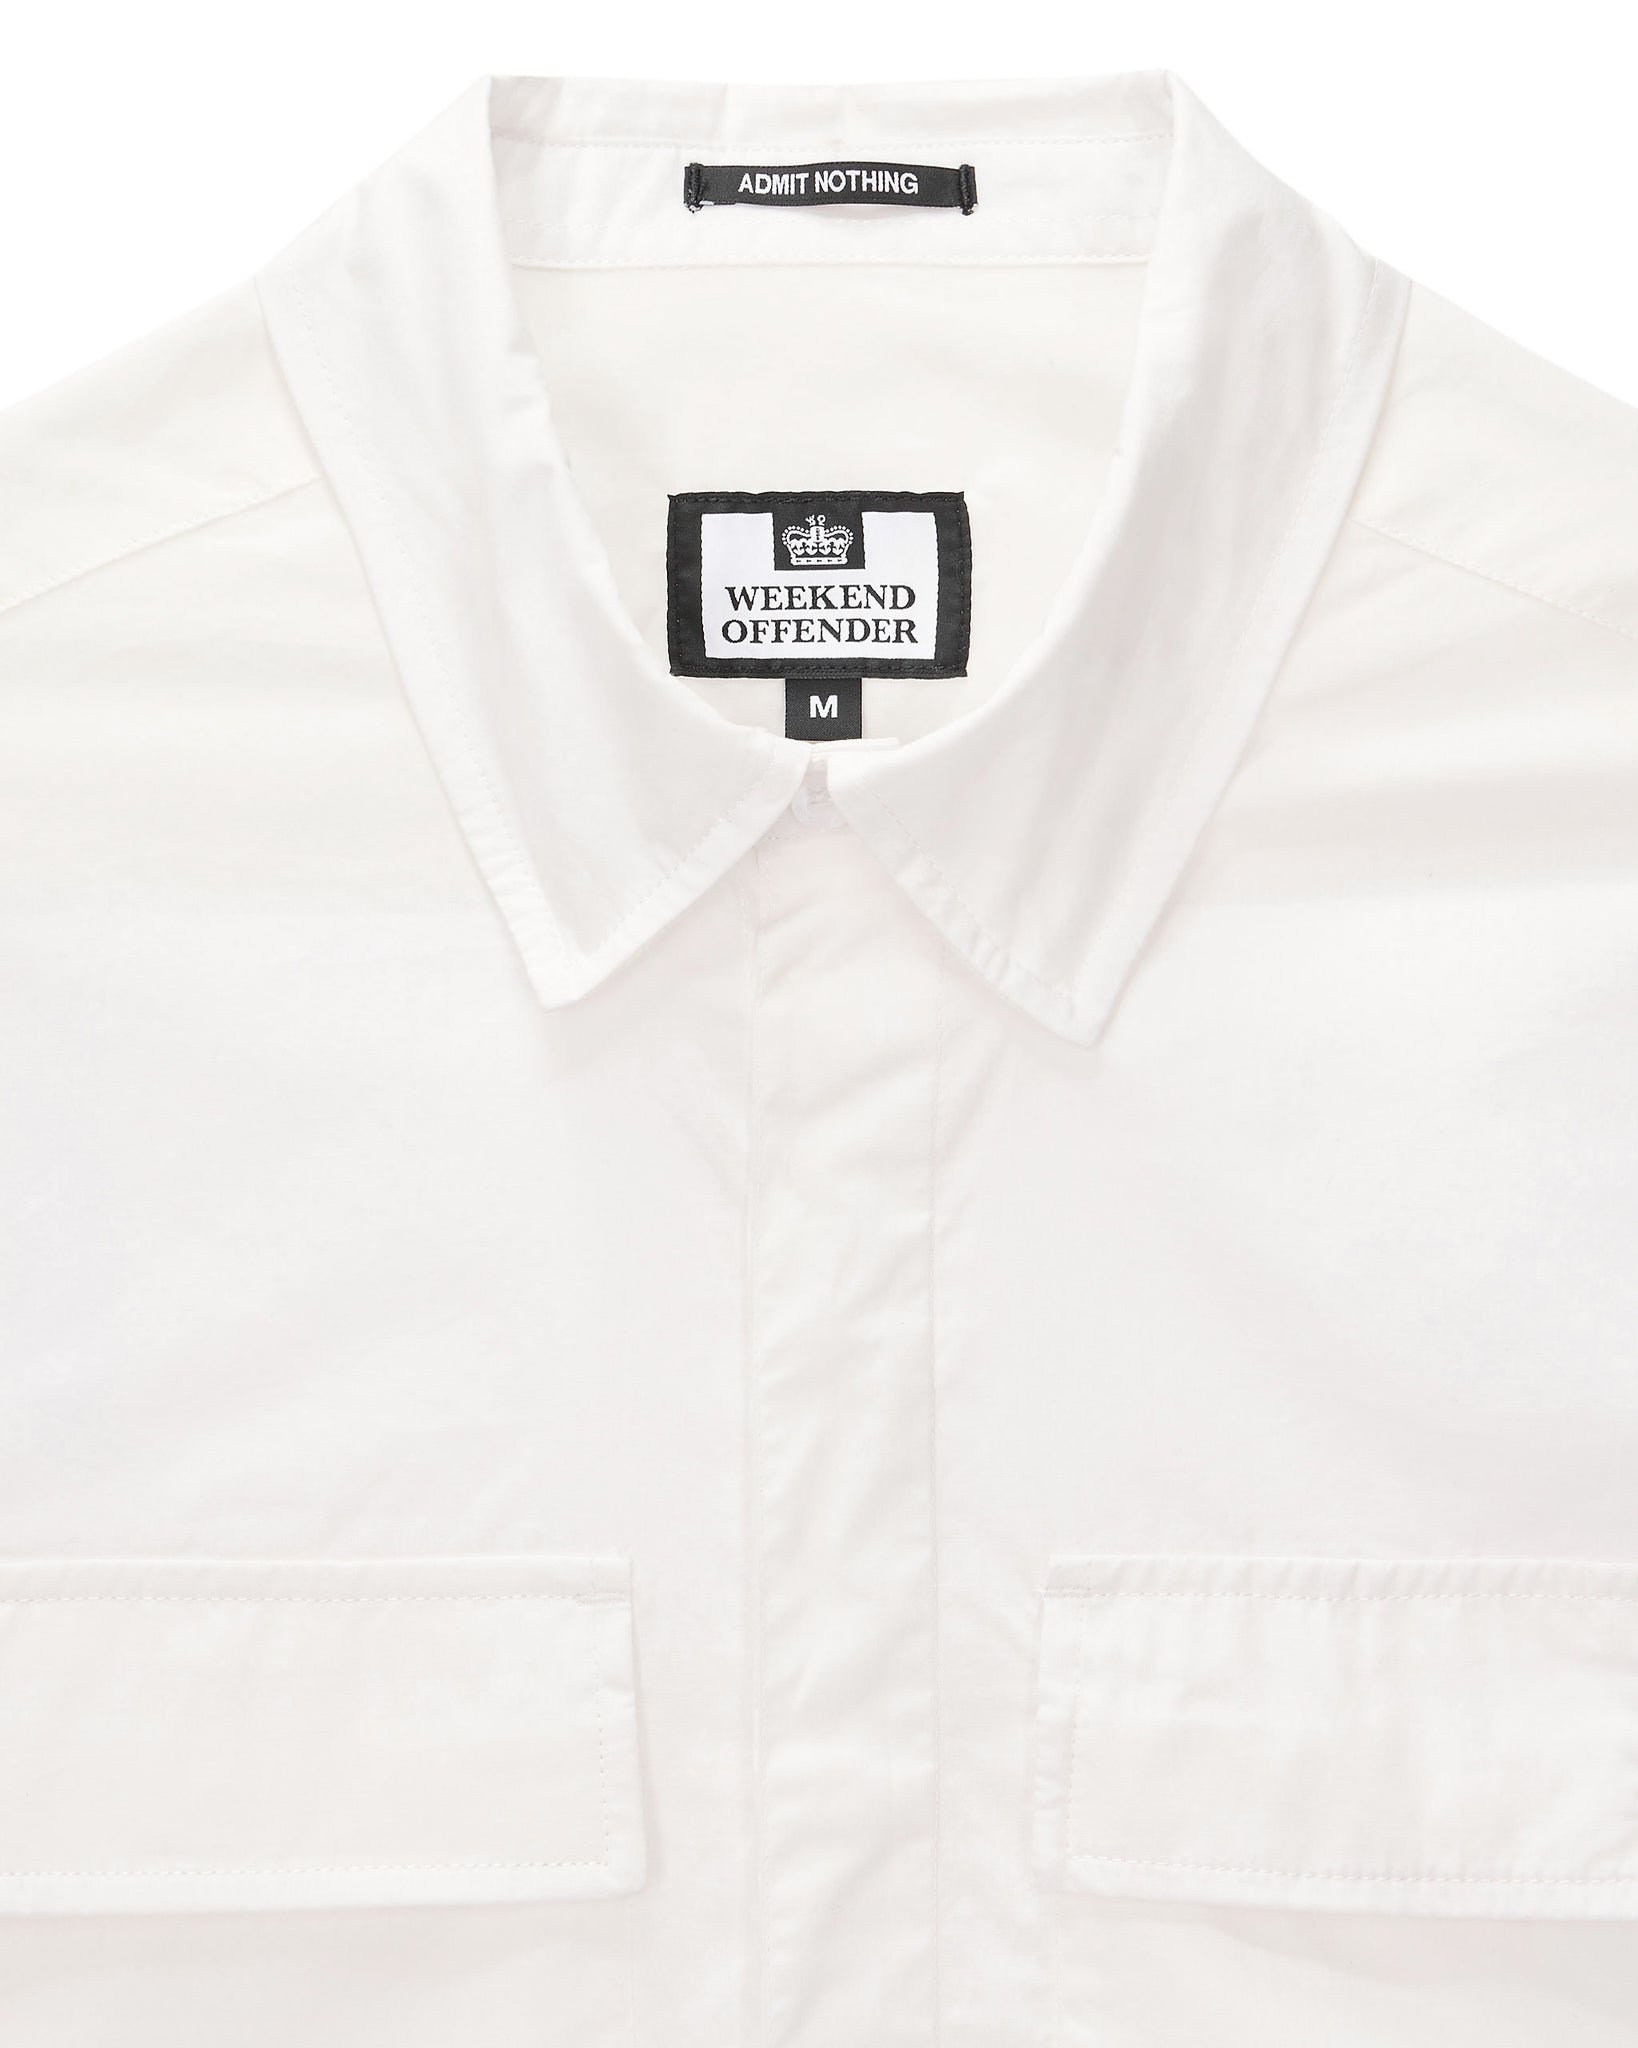 Janeret Shirt White